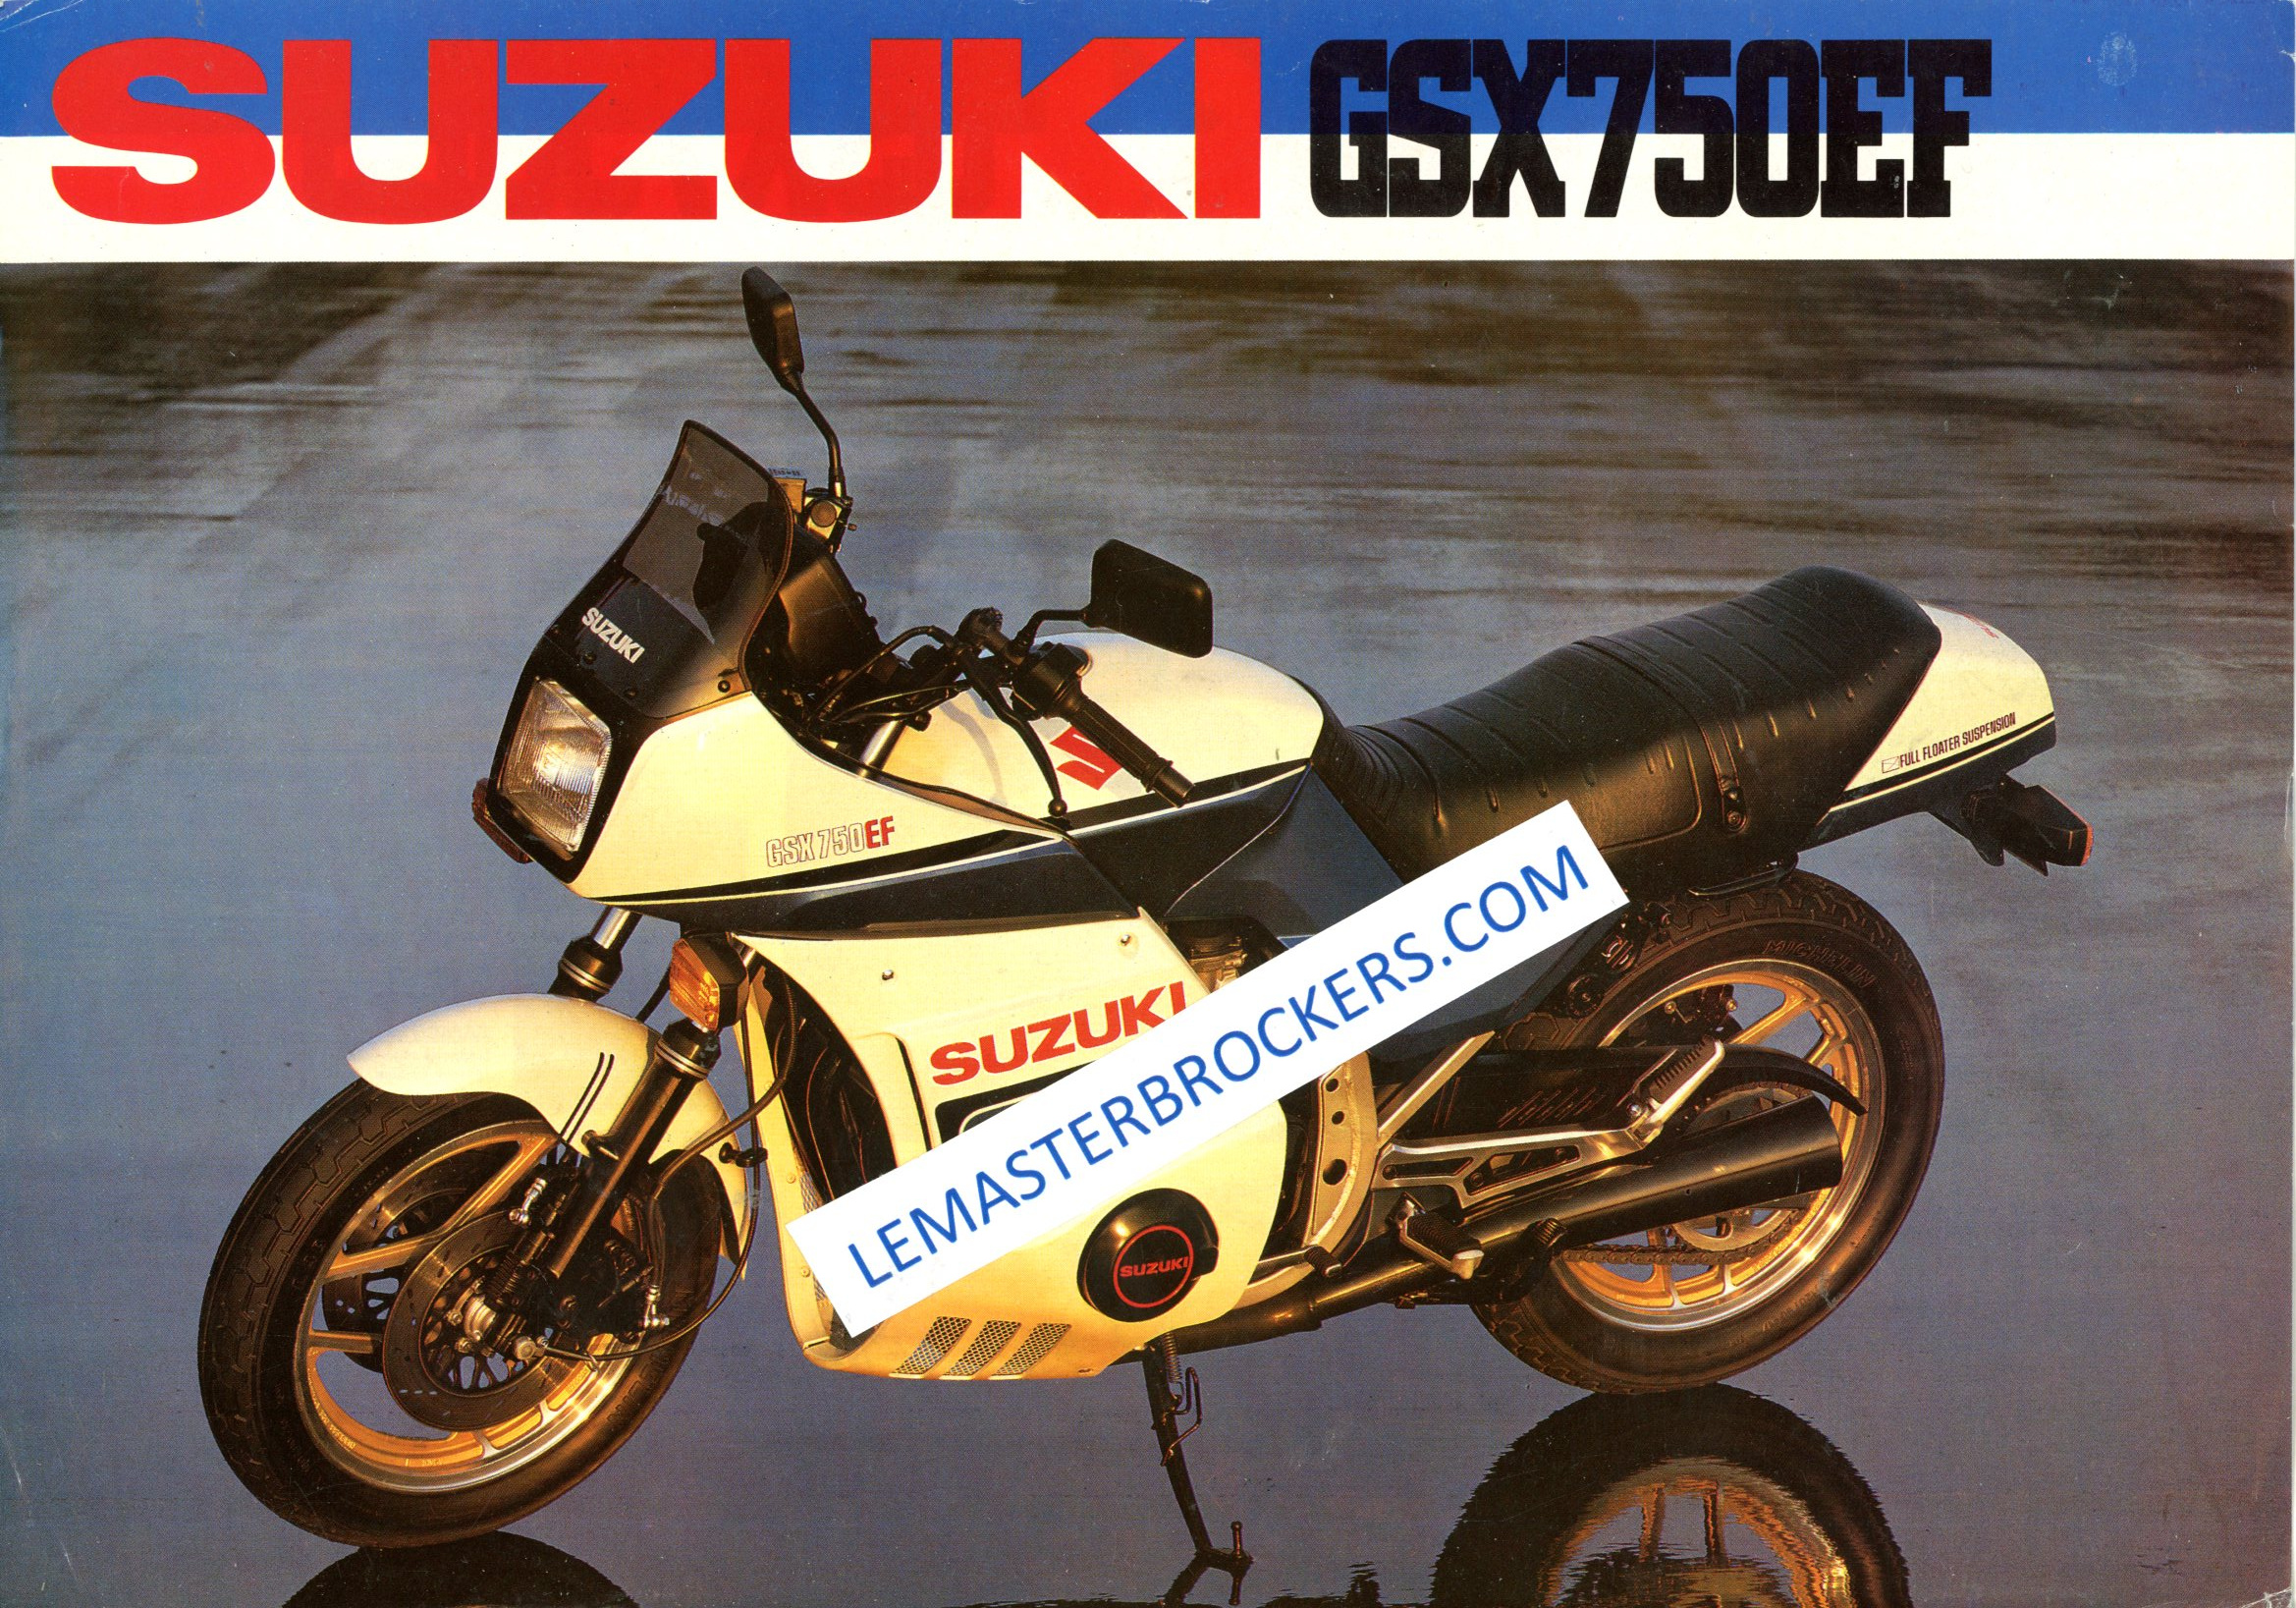 SUZUKI GSX 750 EF GSX750EF brochure moto vintage